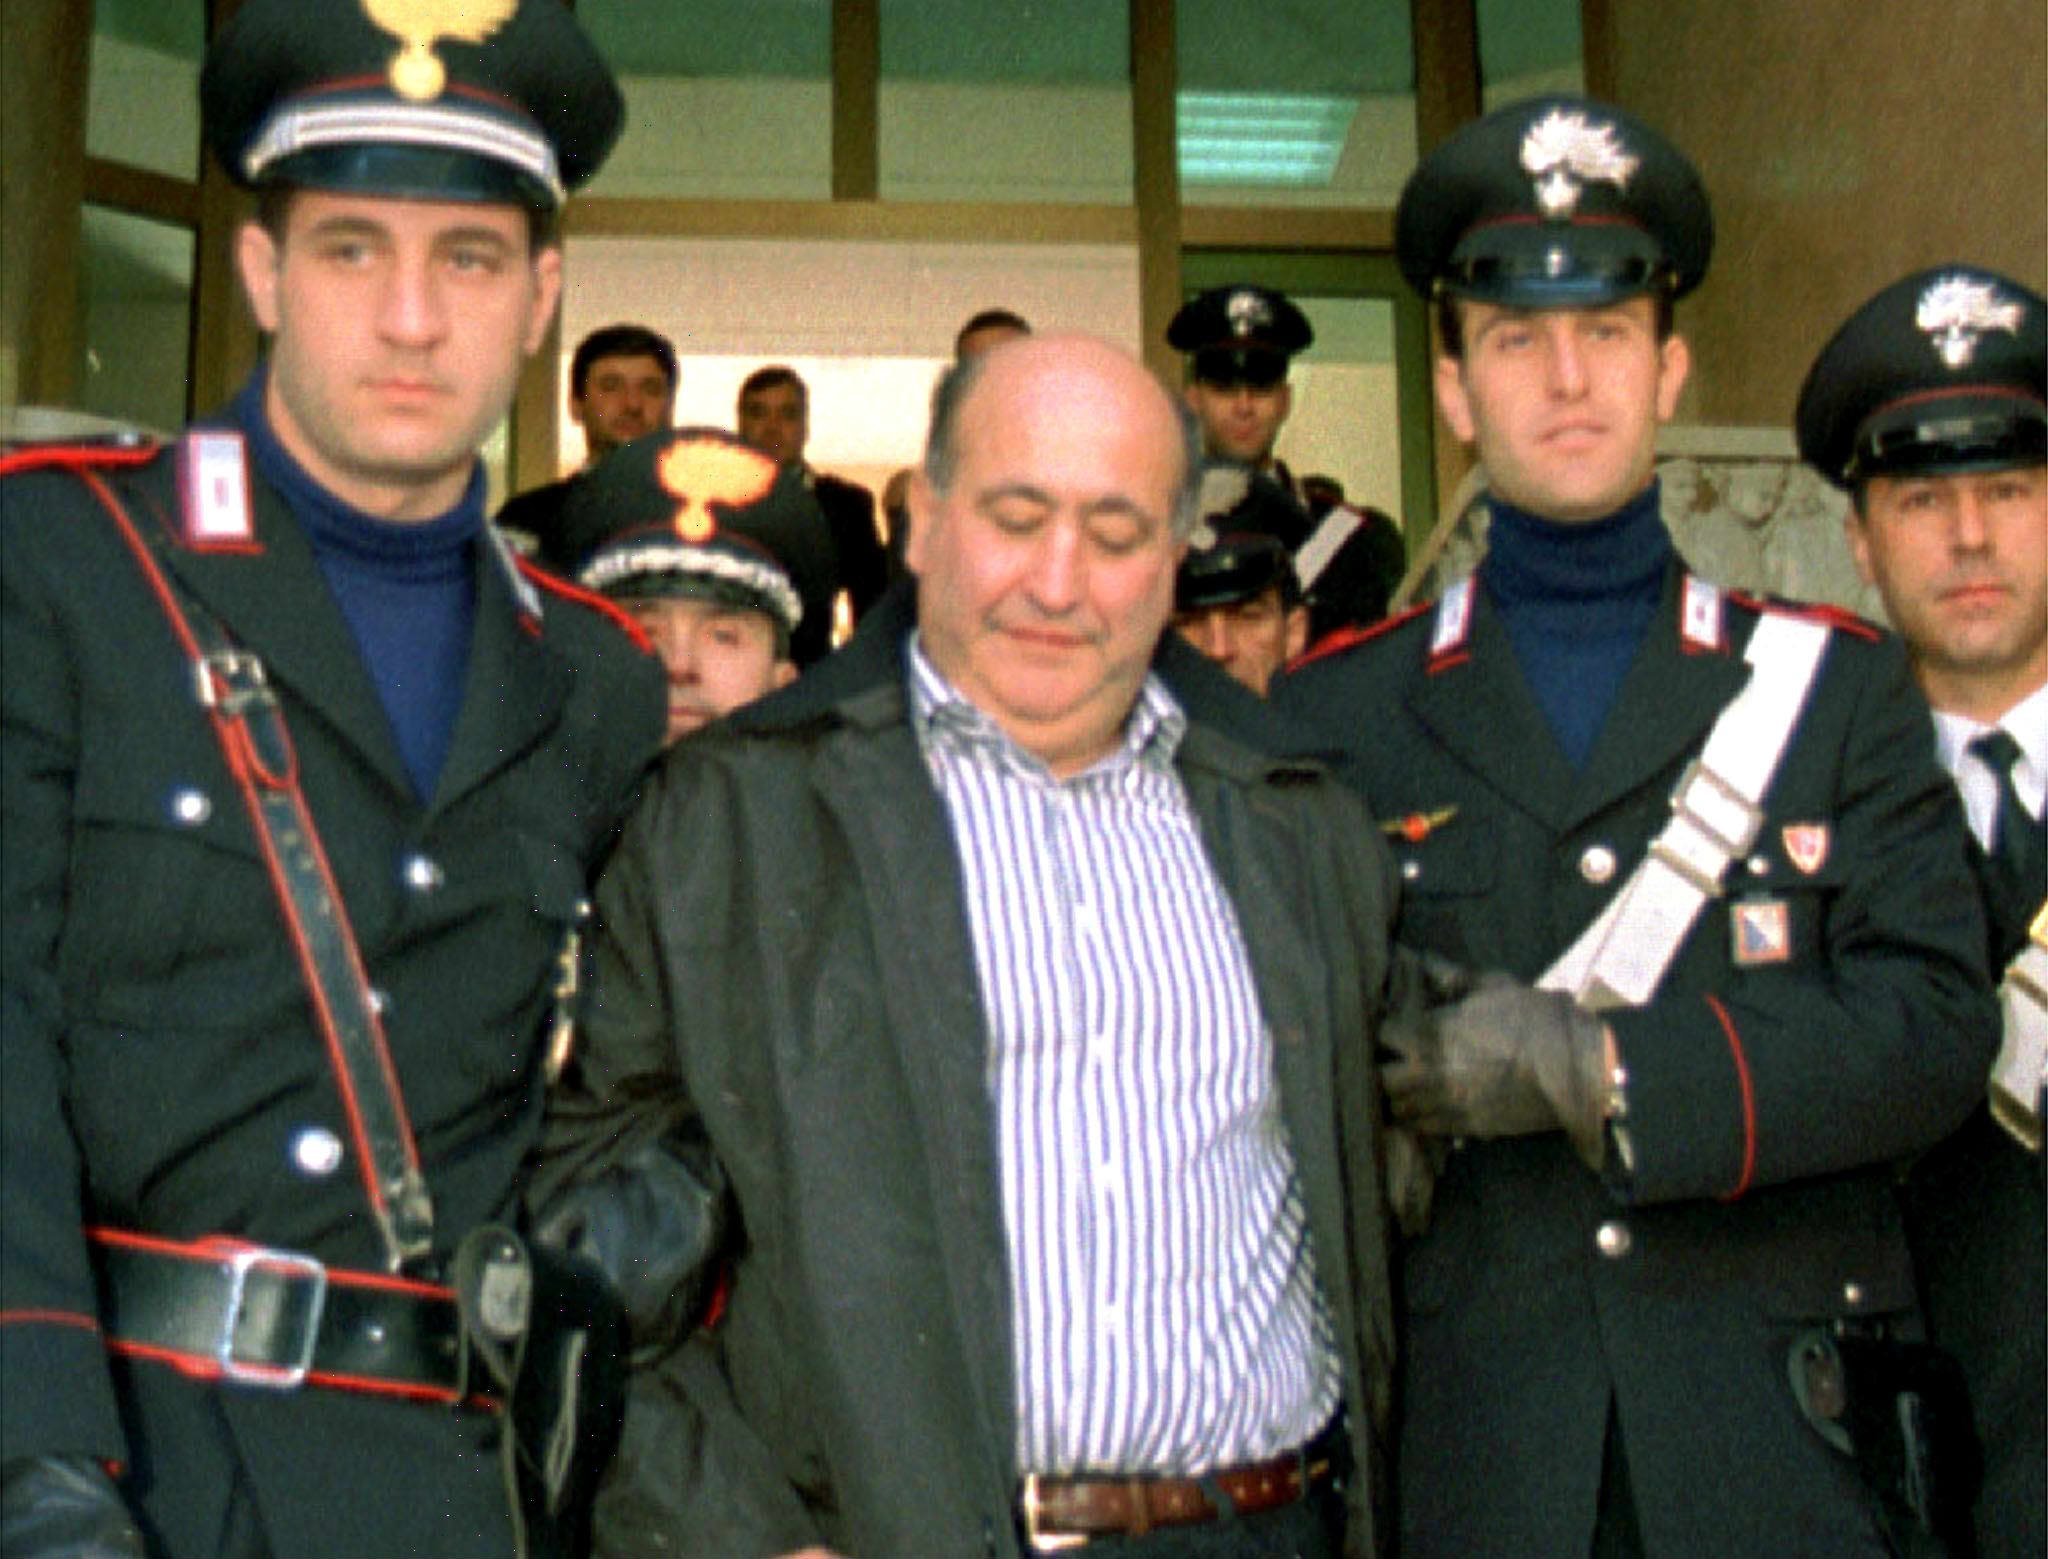 Mafia baas Giuseppe Piromalli (C) wordt naar de gevangenis geleid.